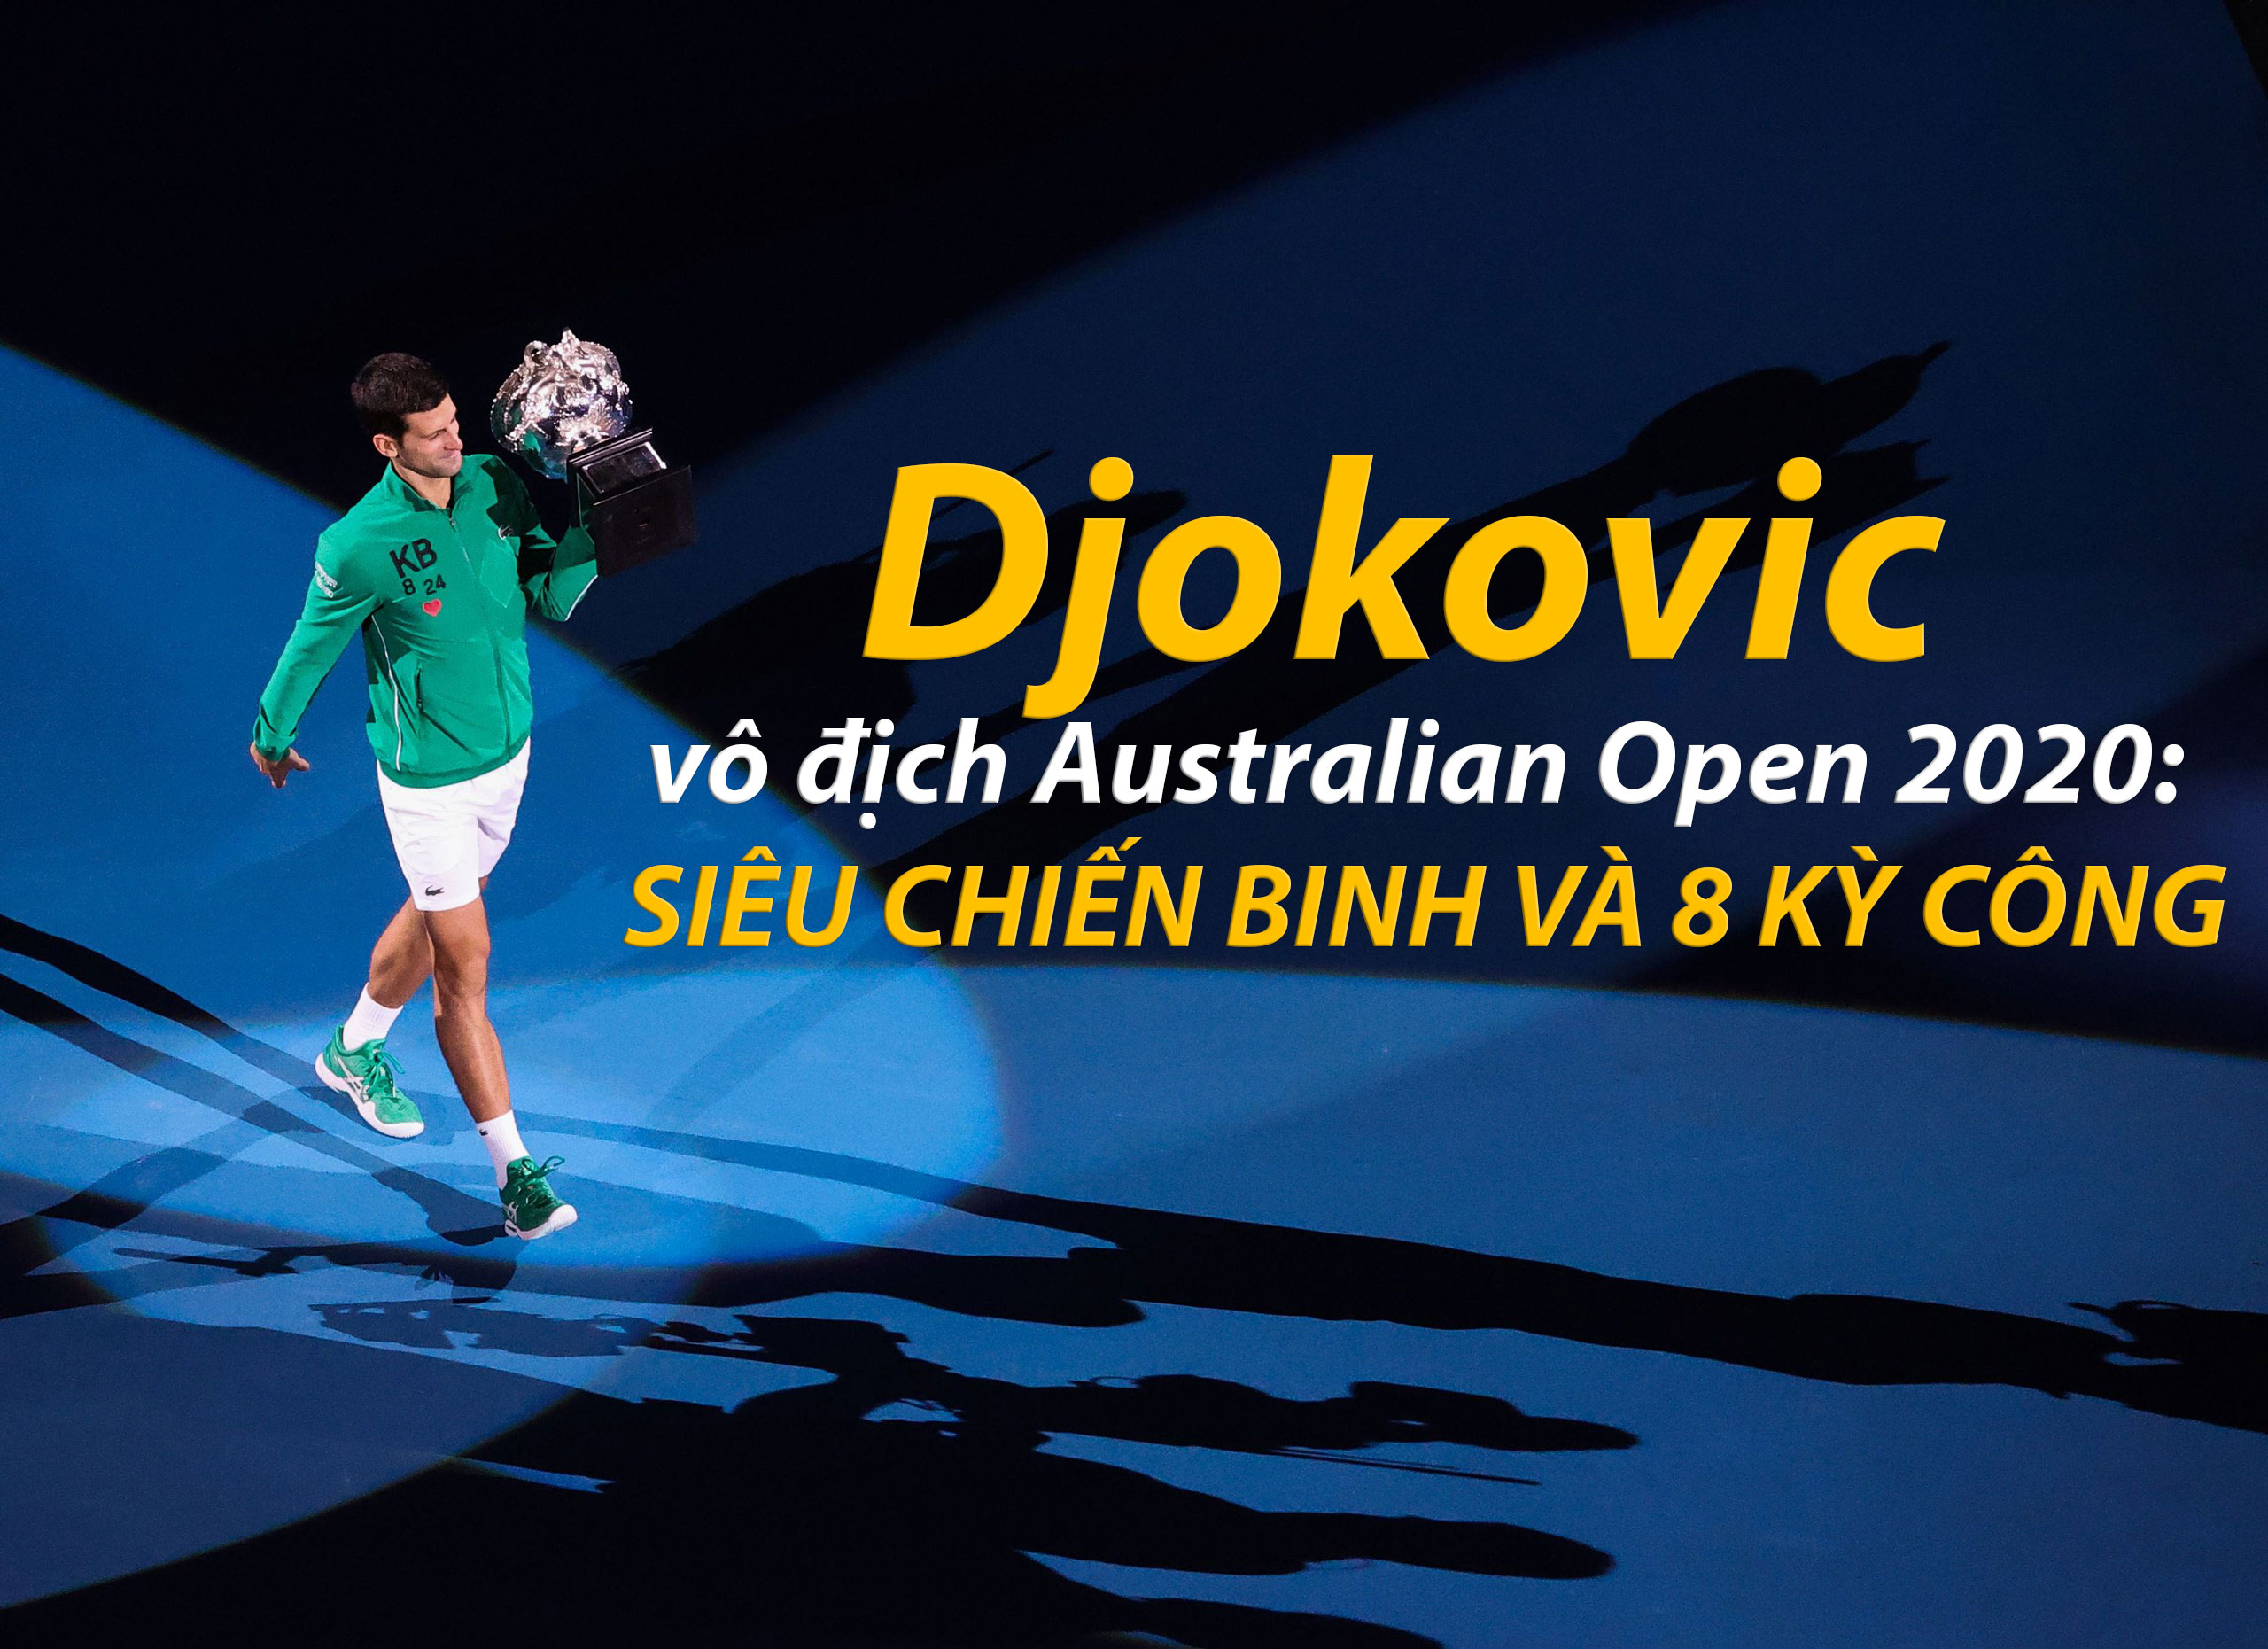 Djokovic vô địch Australian Open 2020: Siêu chiến binh và 8 kỳ công - 1